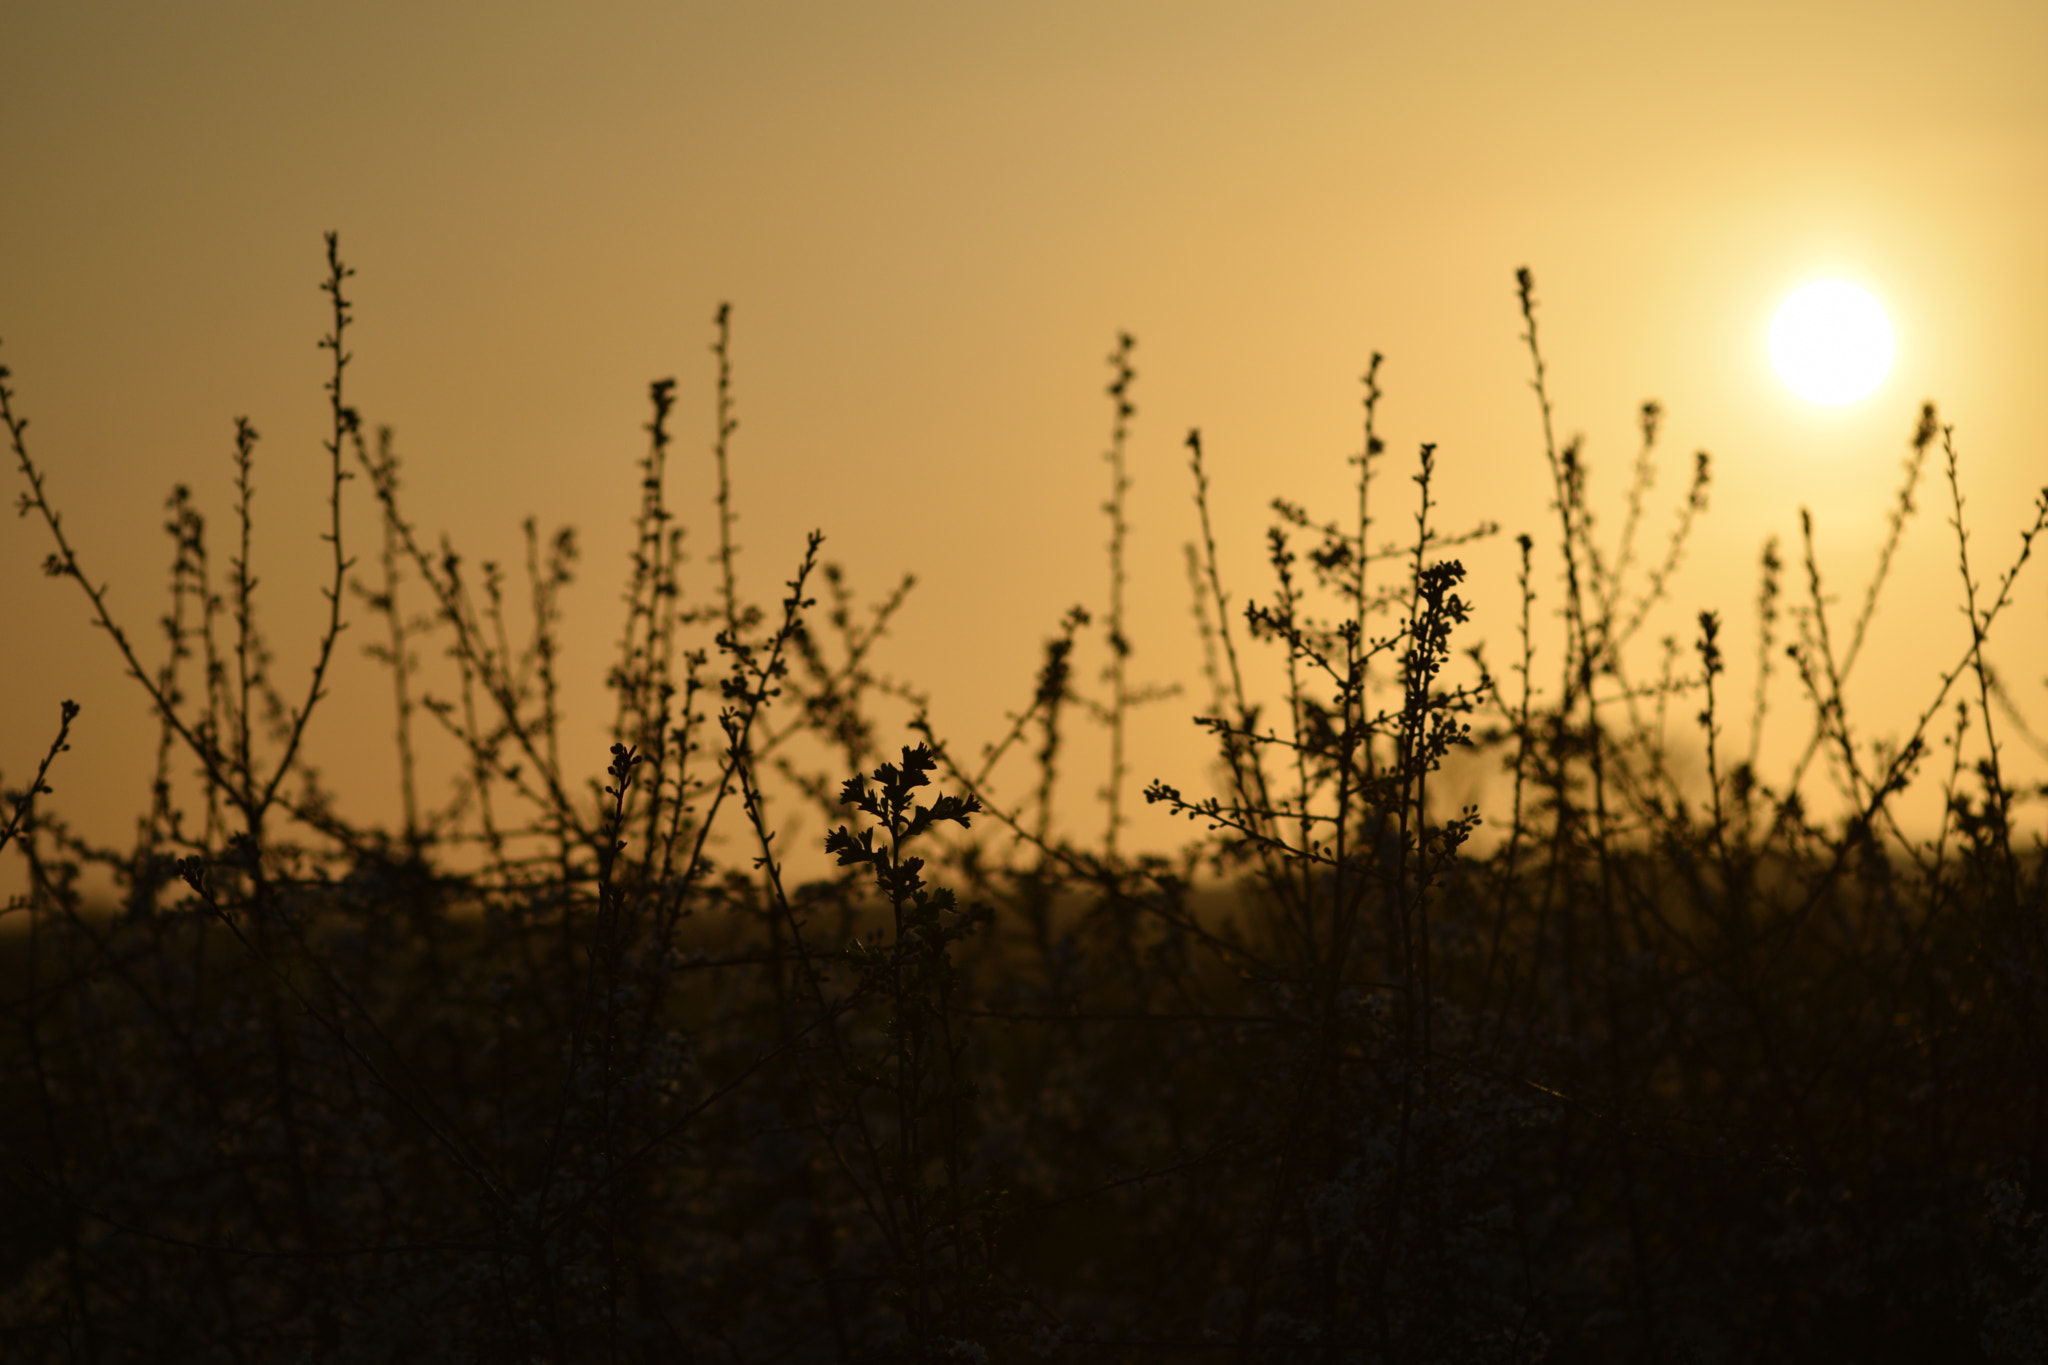 Nikon D3300 + AF Nikkor 70-210mm f/4-5.6 sample photo. Sunset over fields photography